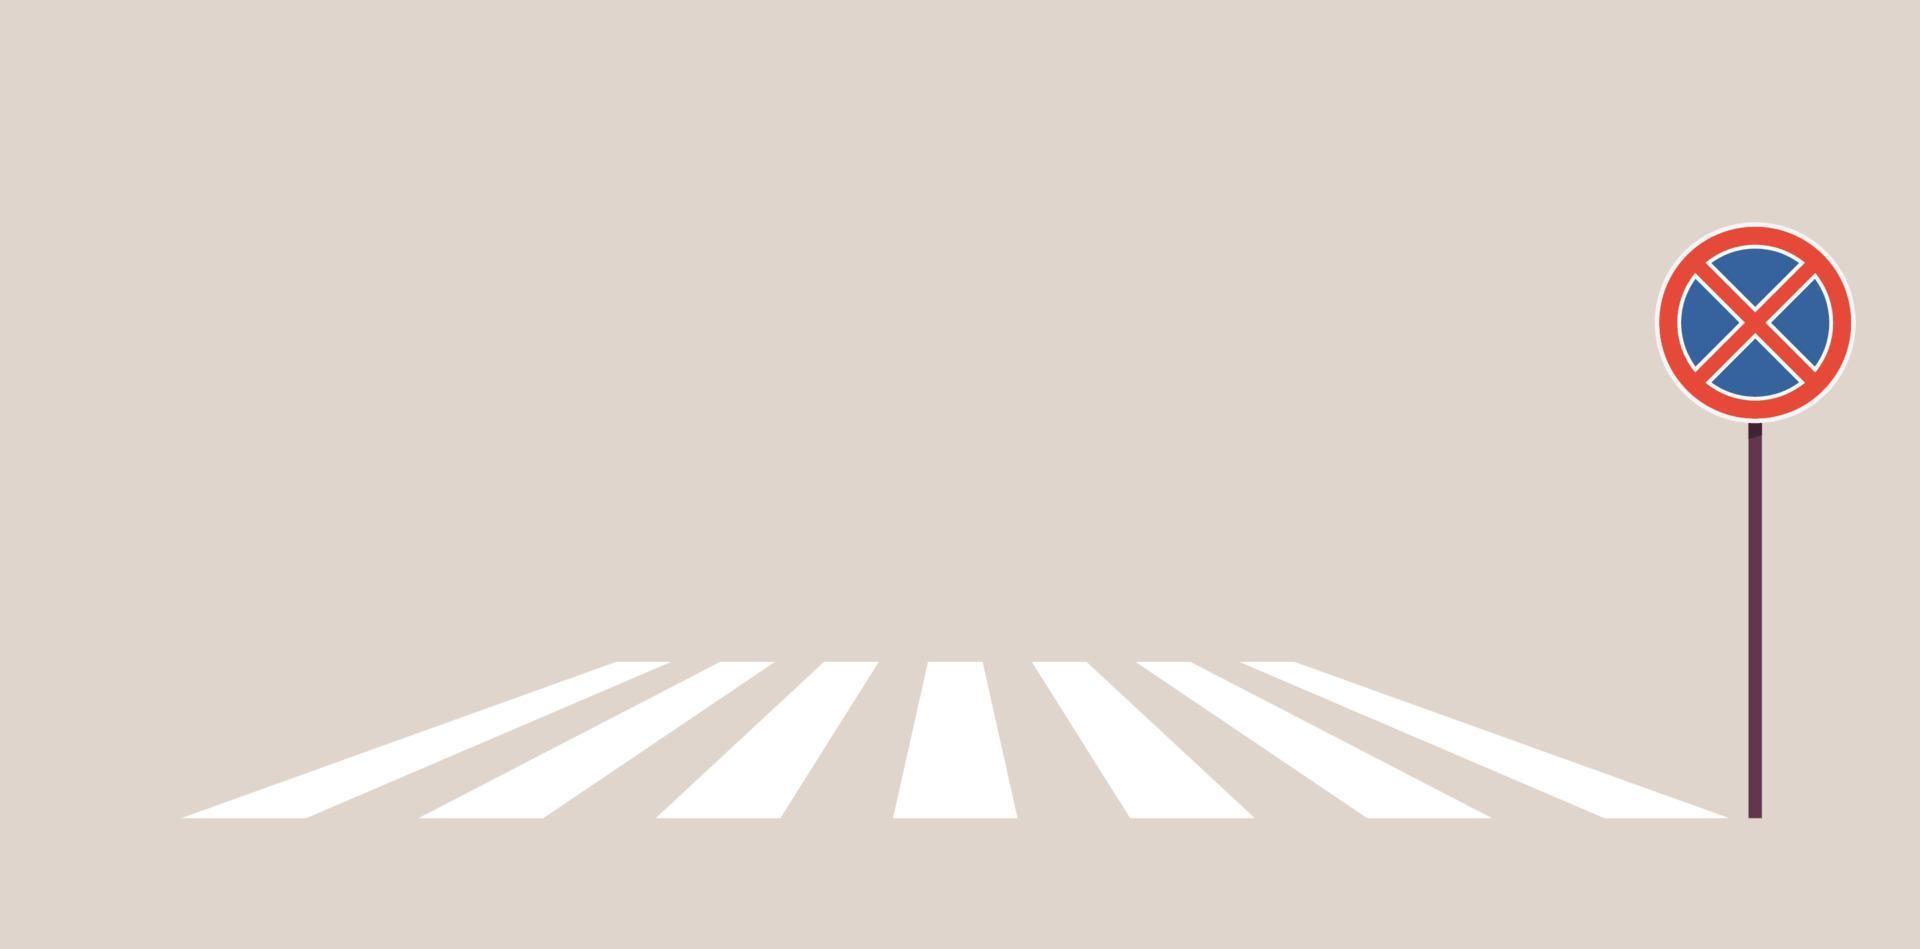 panneaux de signalisation sur la route de la ville et le concept de passage pour piétons illustration vectorielle plane. vecteur